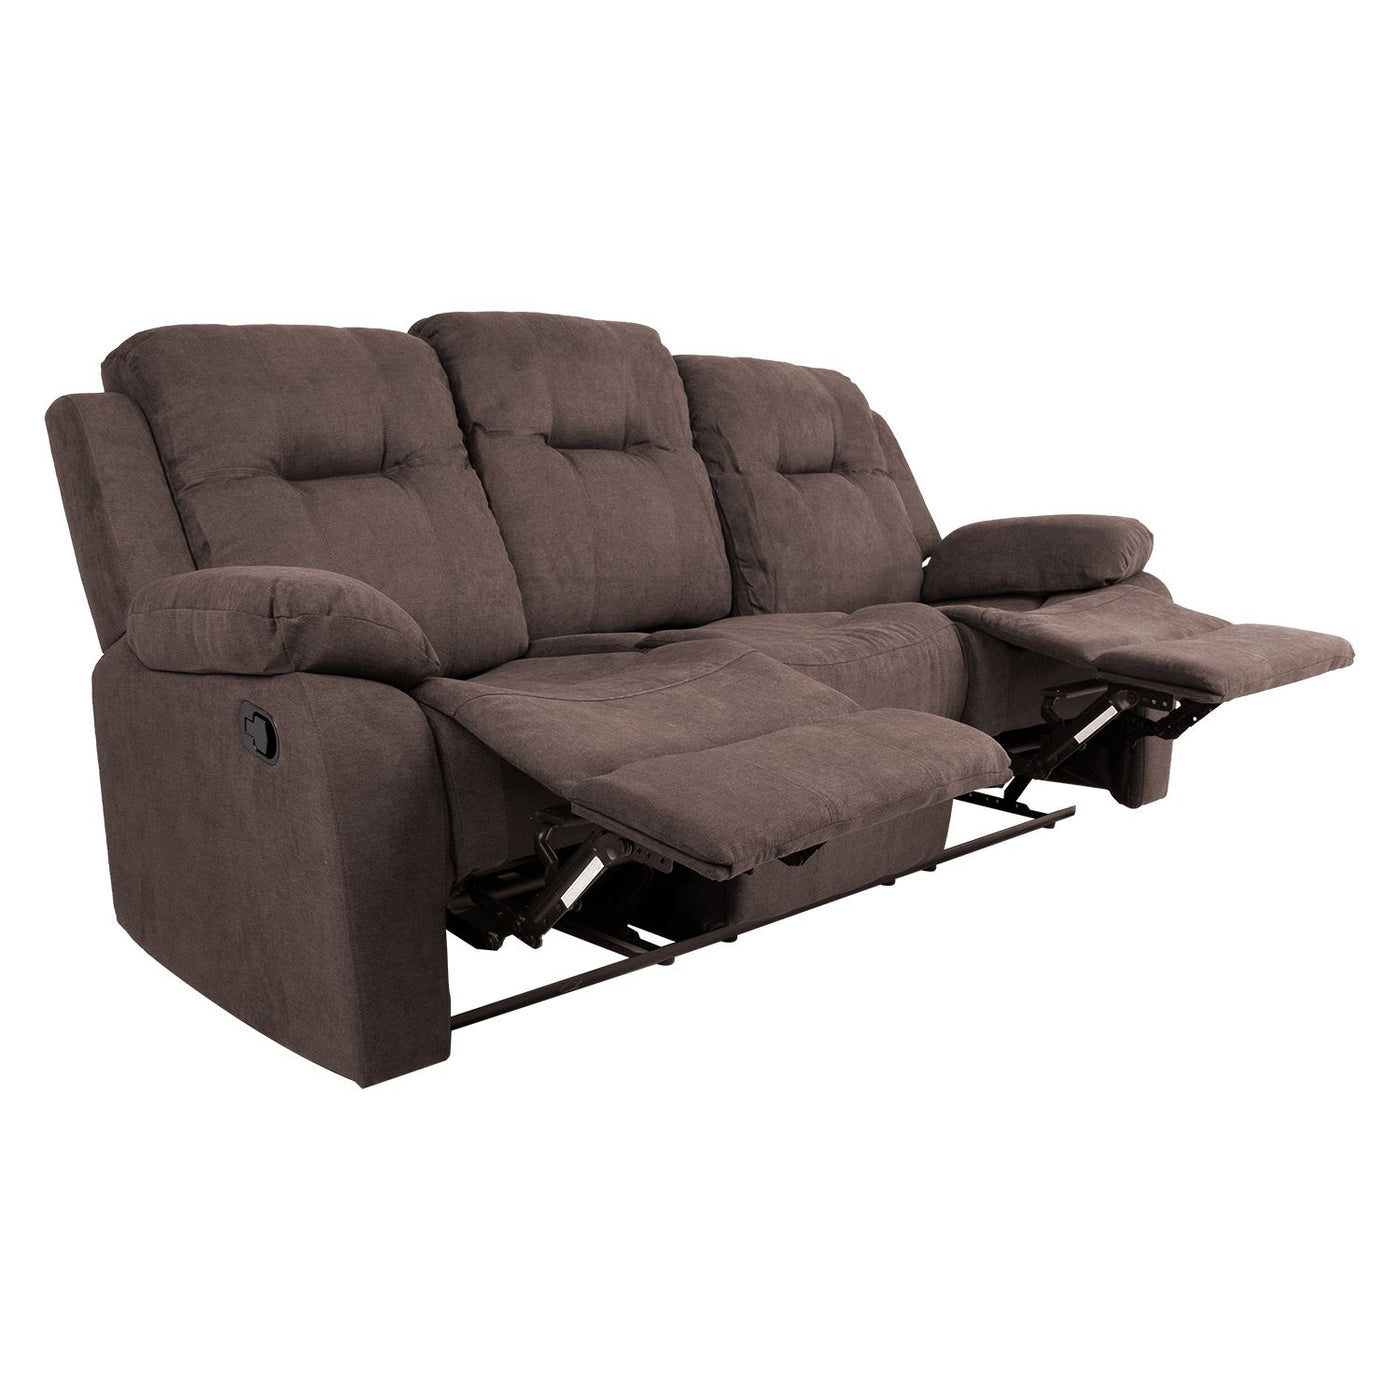 Dixon 3-istuttava recliner sohva, ruskea - Mööpeli.com